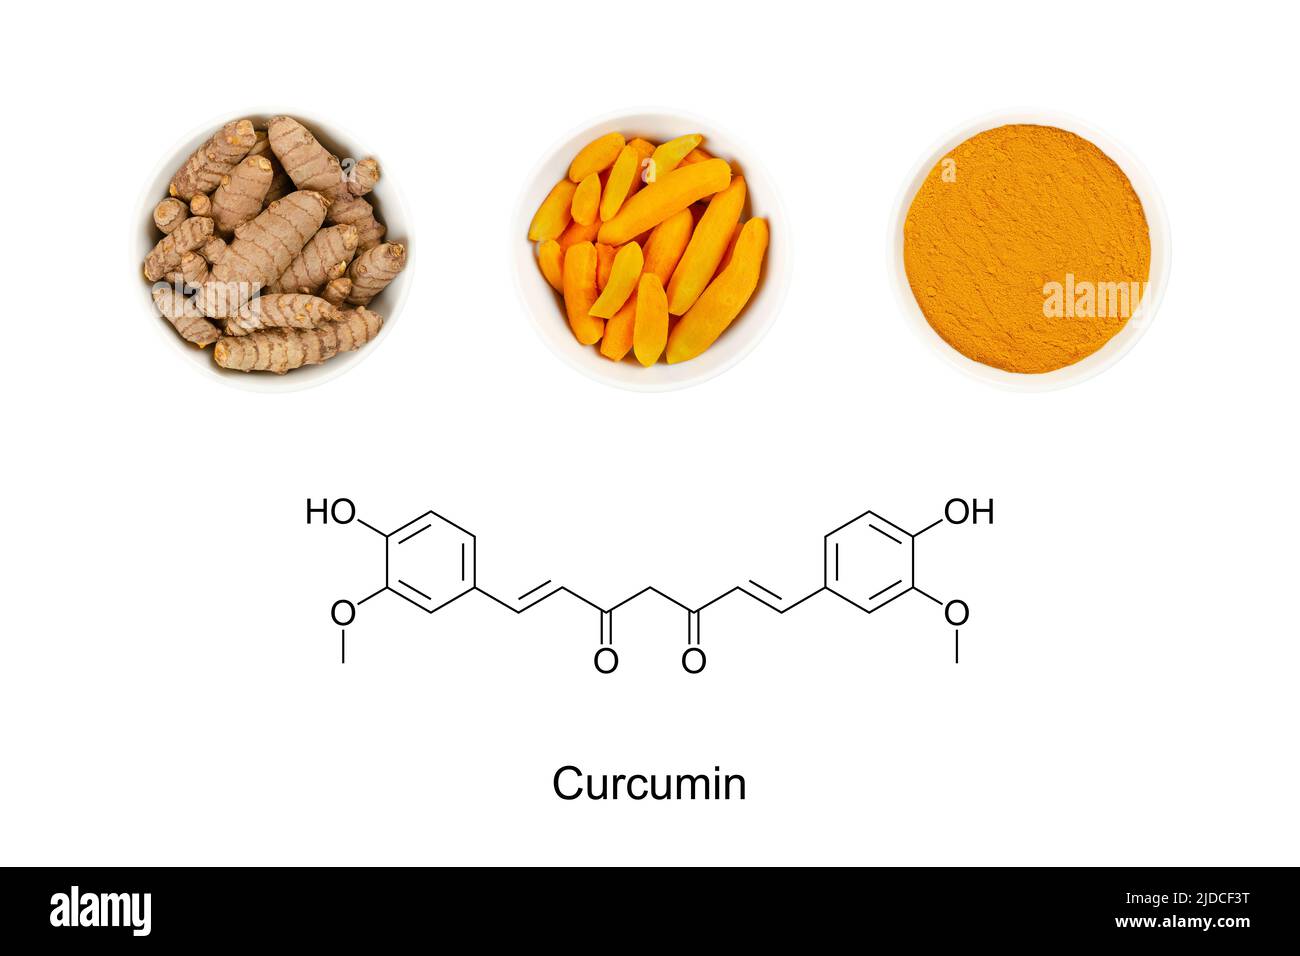 https://c8.alamy.com/compfr/2jdcf3t/curcuma-et-la-formule-chimique-de-curcumine-structure-squelettique-de-la-forme-ceto-du-produit-chimique-jaune-et-du-principal-curcuminoide-du-curcuma-2jdcf3t.jpg